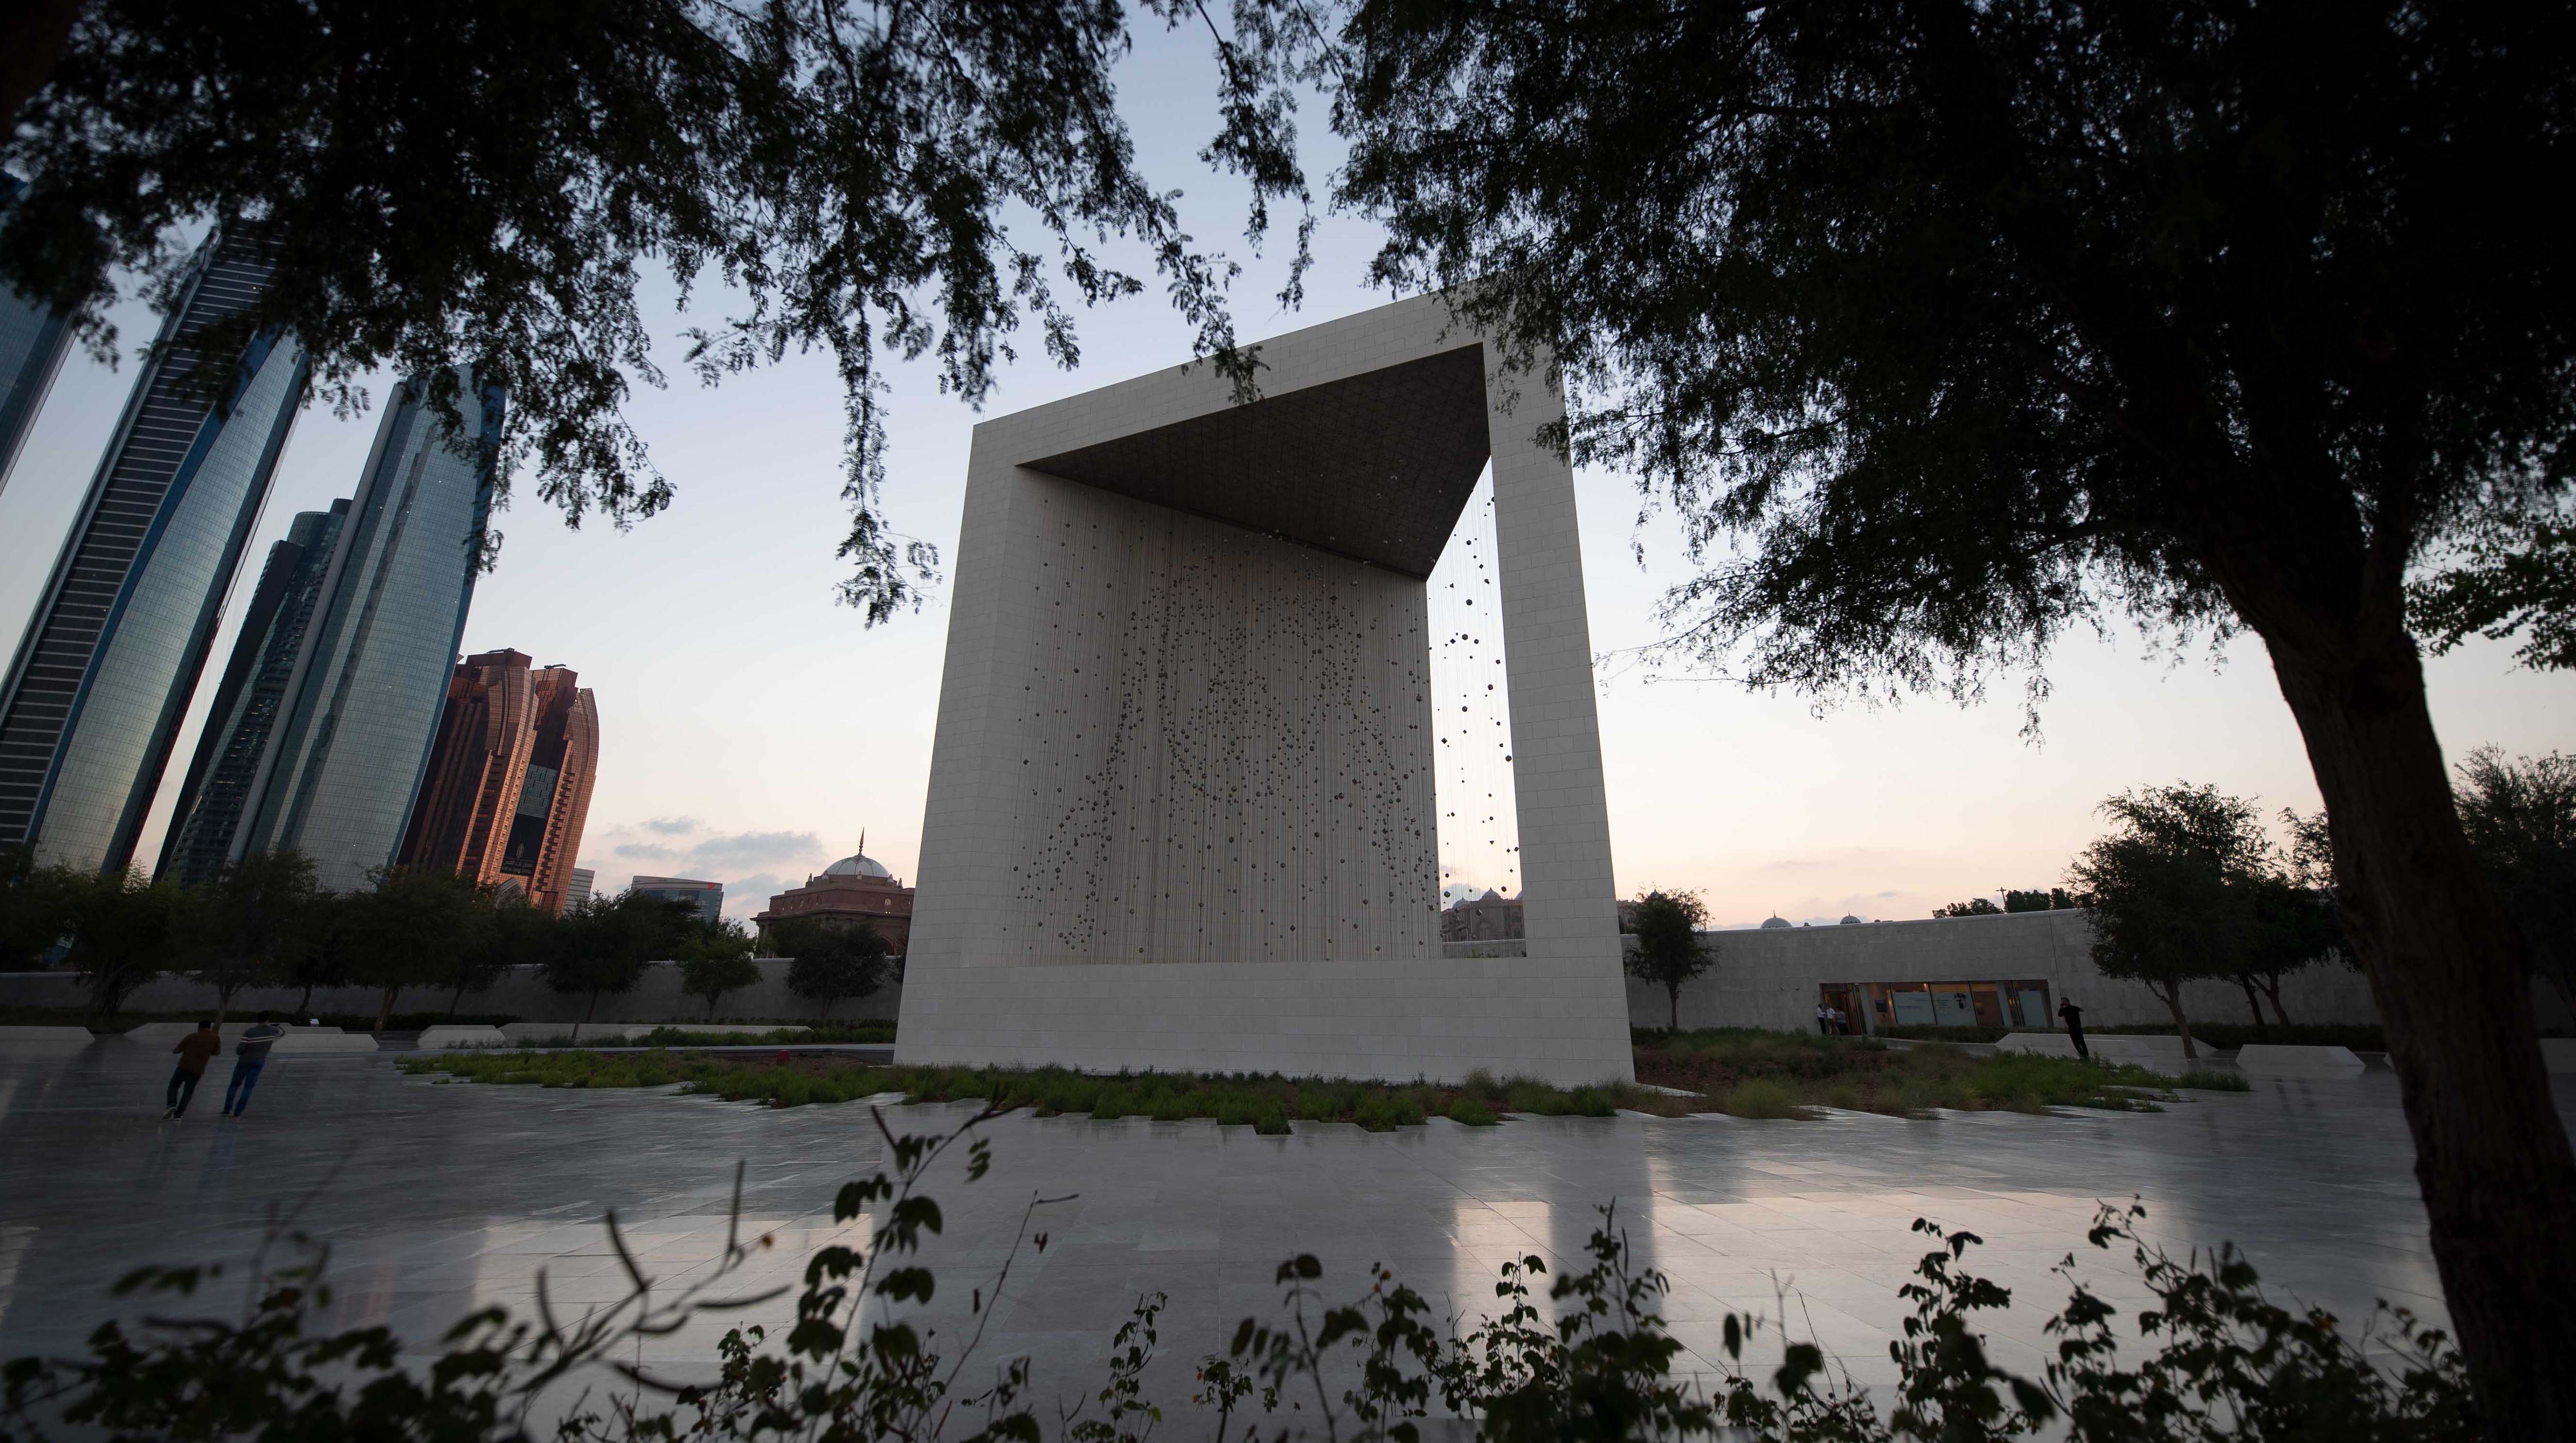 Founder’s Memorial stone in Abu Dhabi